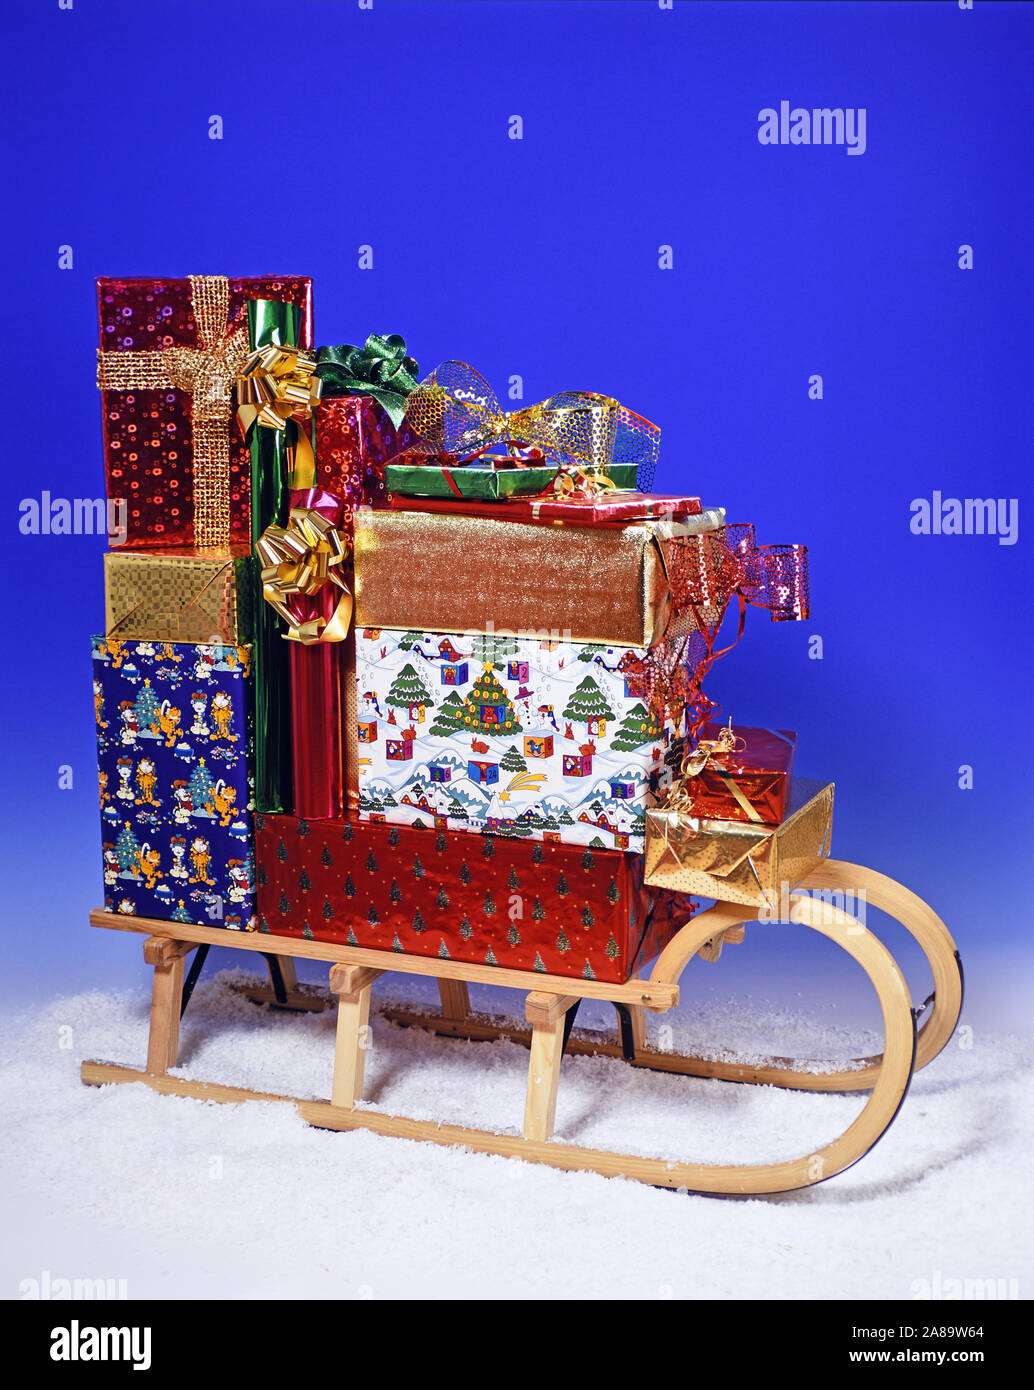 Weihnachtsgeschenke auf dem Schlitten, Studioaufnahme, Weihnachten, Geschenke, Stock Photo